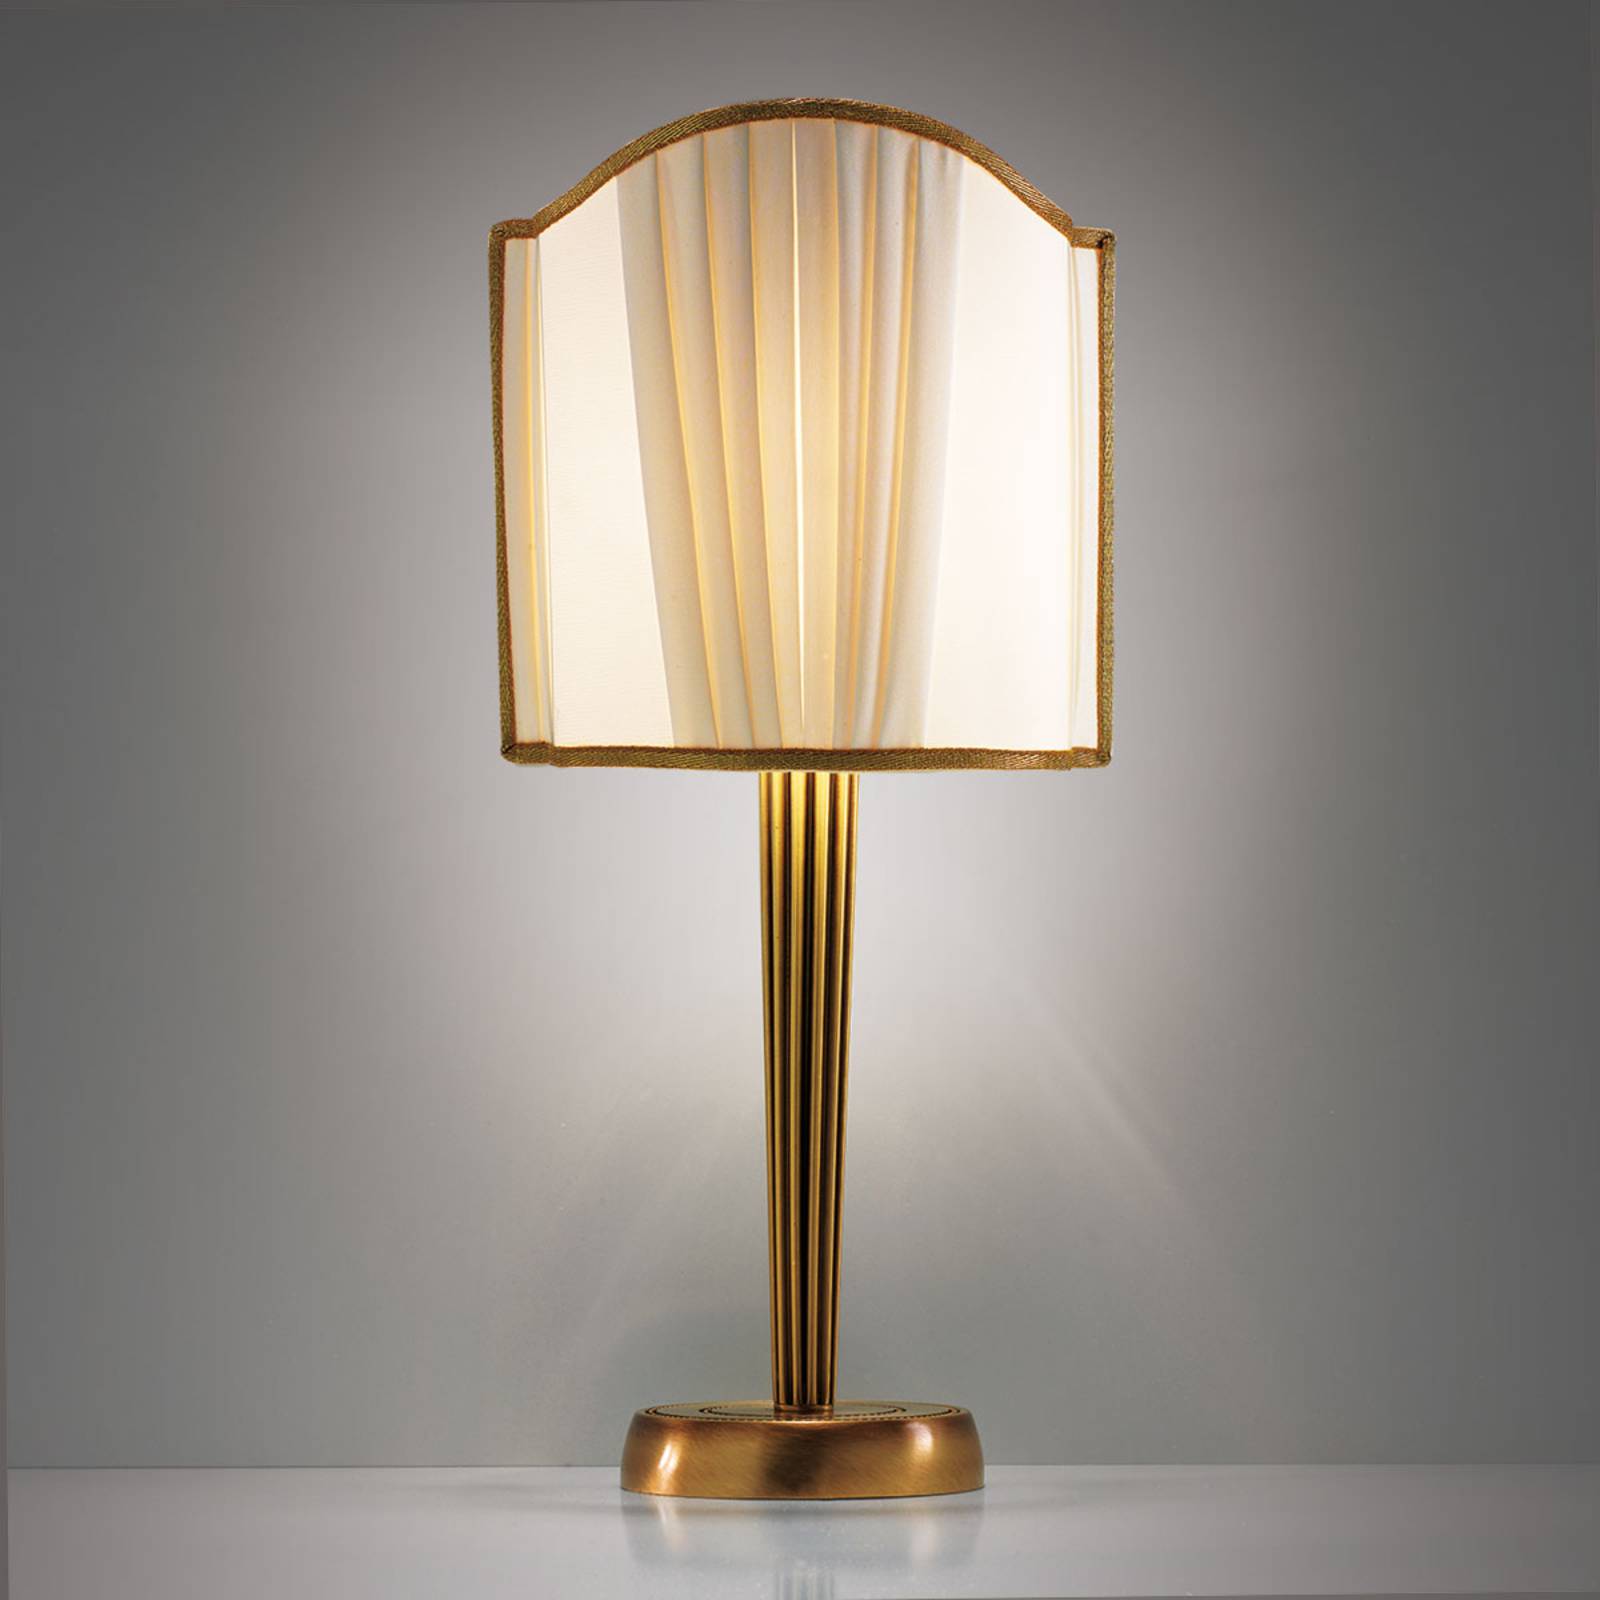 Cremasco Stolní lampa Belle Epoque, 20 cm vysoká